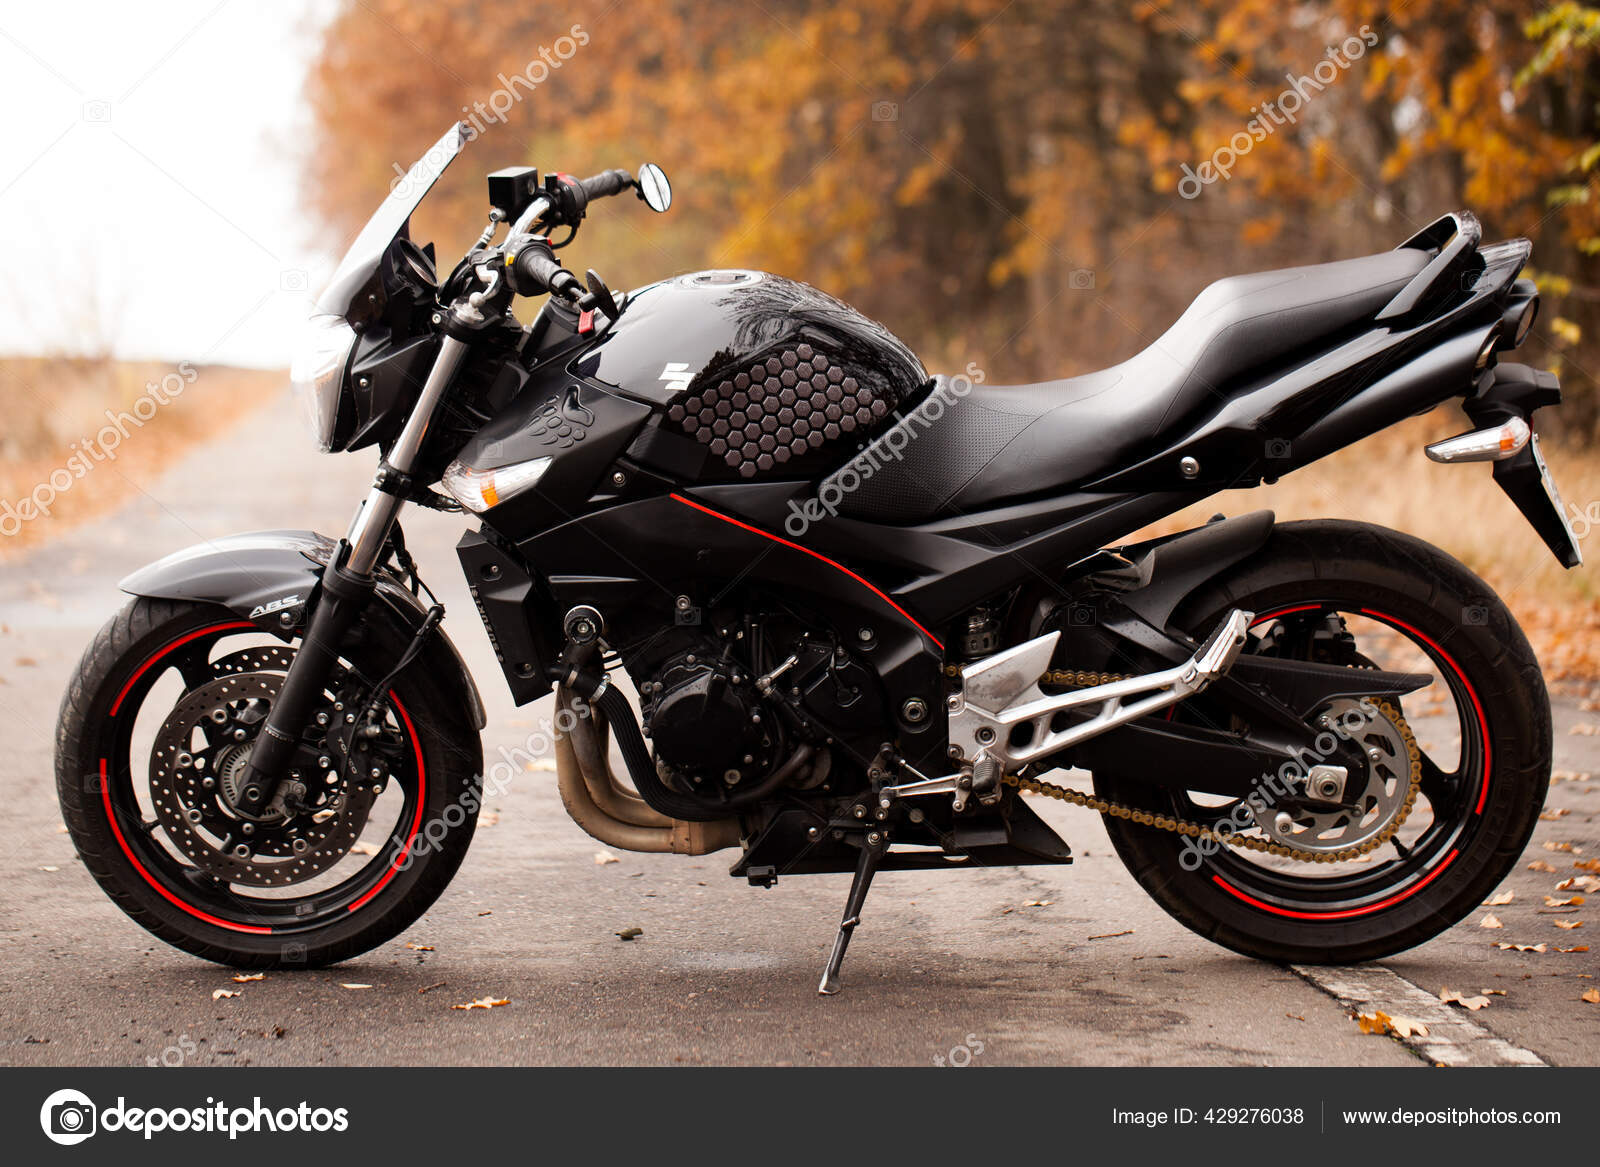 Black Suzuki Gsr600 Motorcycle Nature Stock Photo by ©SergeyTay 429276038